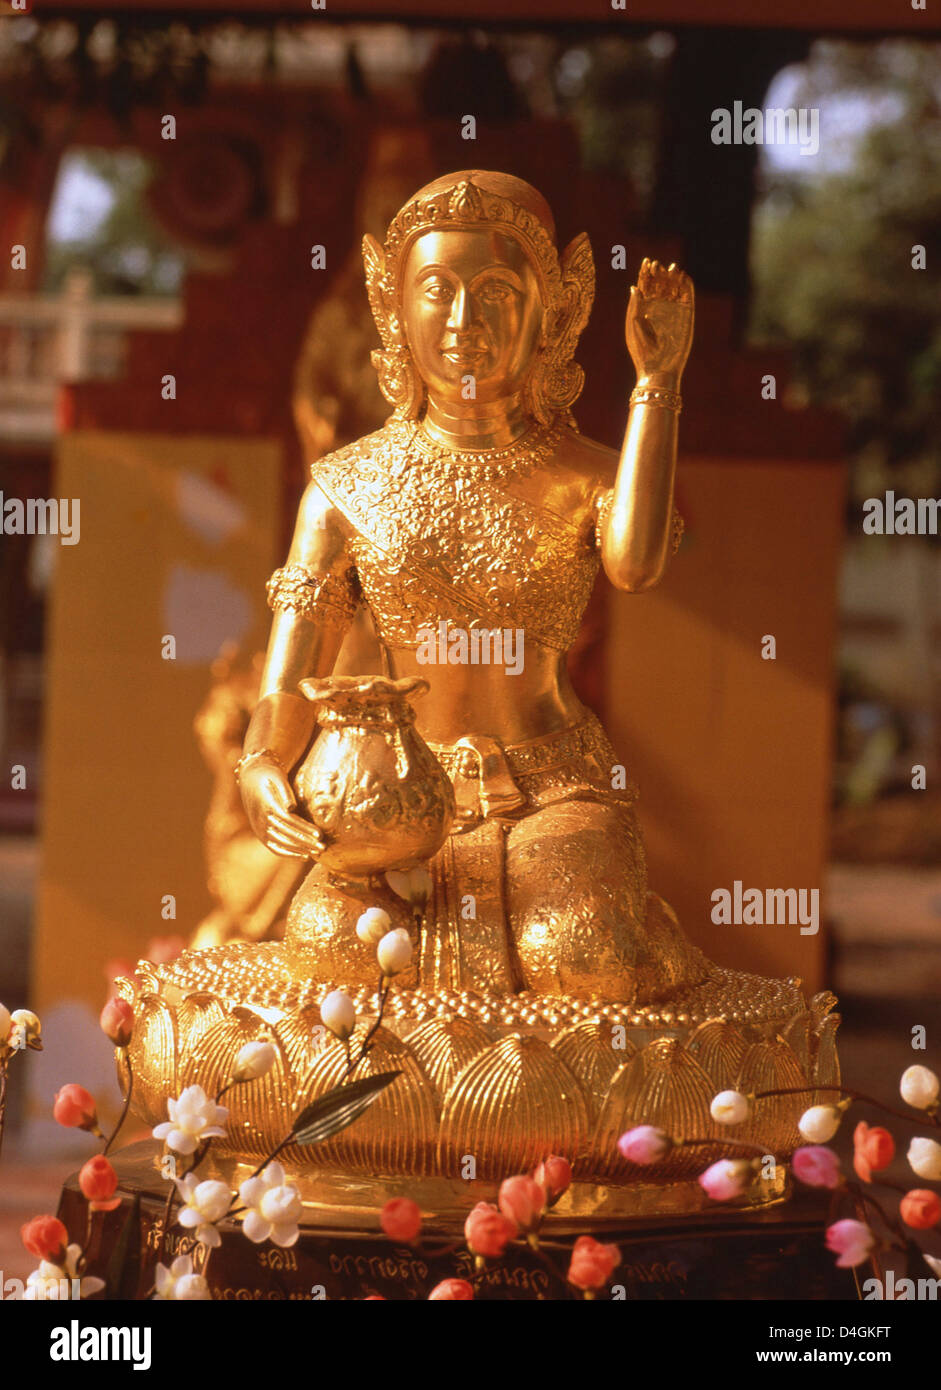 Golden Hindu god statue, Phuket, Phuket Province, Thailand Stock Photo